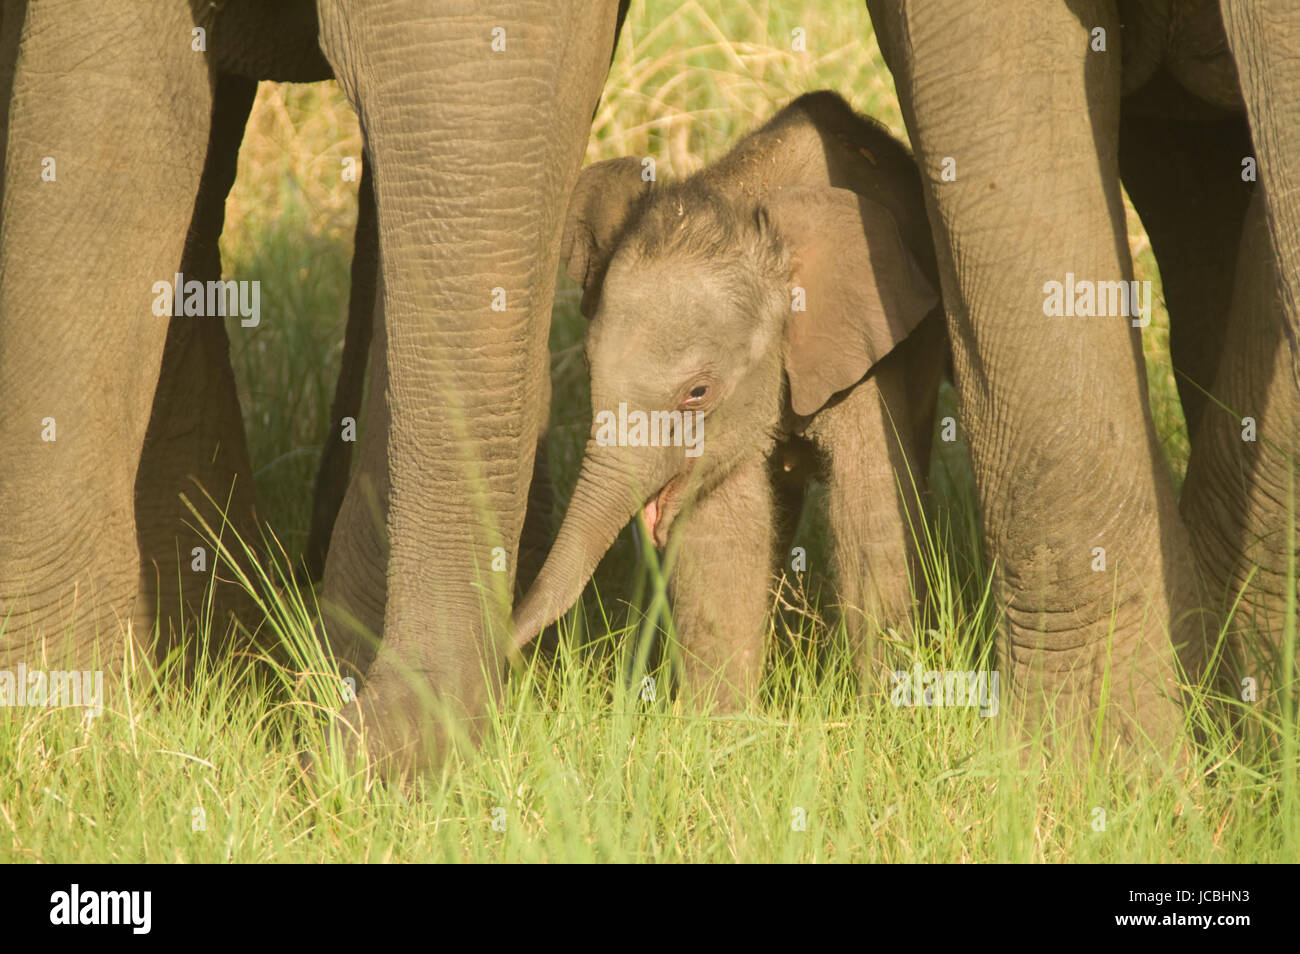 Bébé éléphant indien sauvage à l'abri sous les jambes de femelles adultes dans le parc national de Corbett, l'Uttaranchal, Inde Banque D'Images